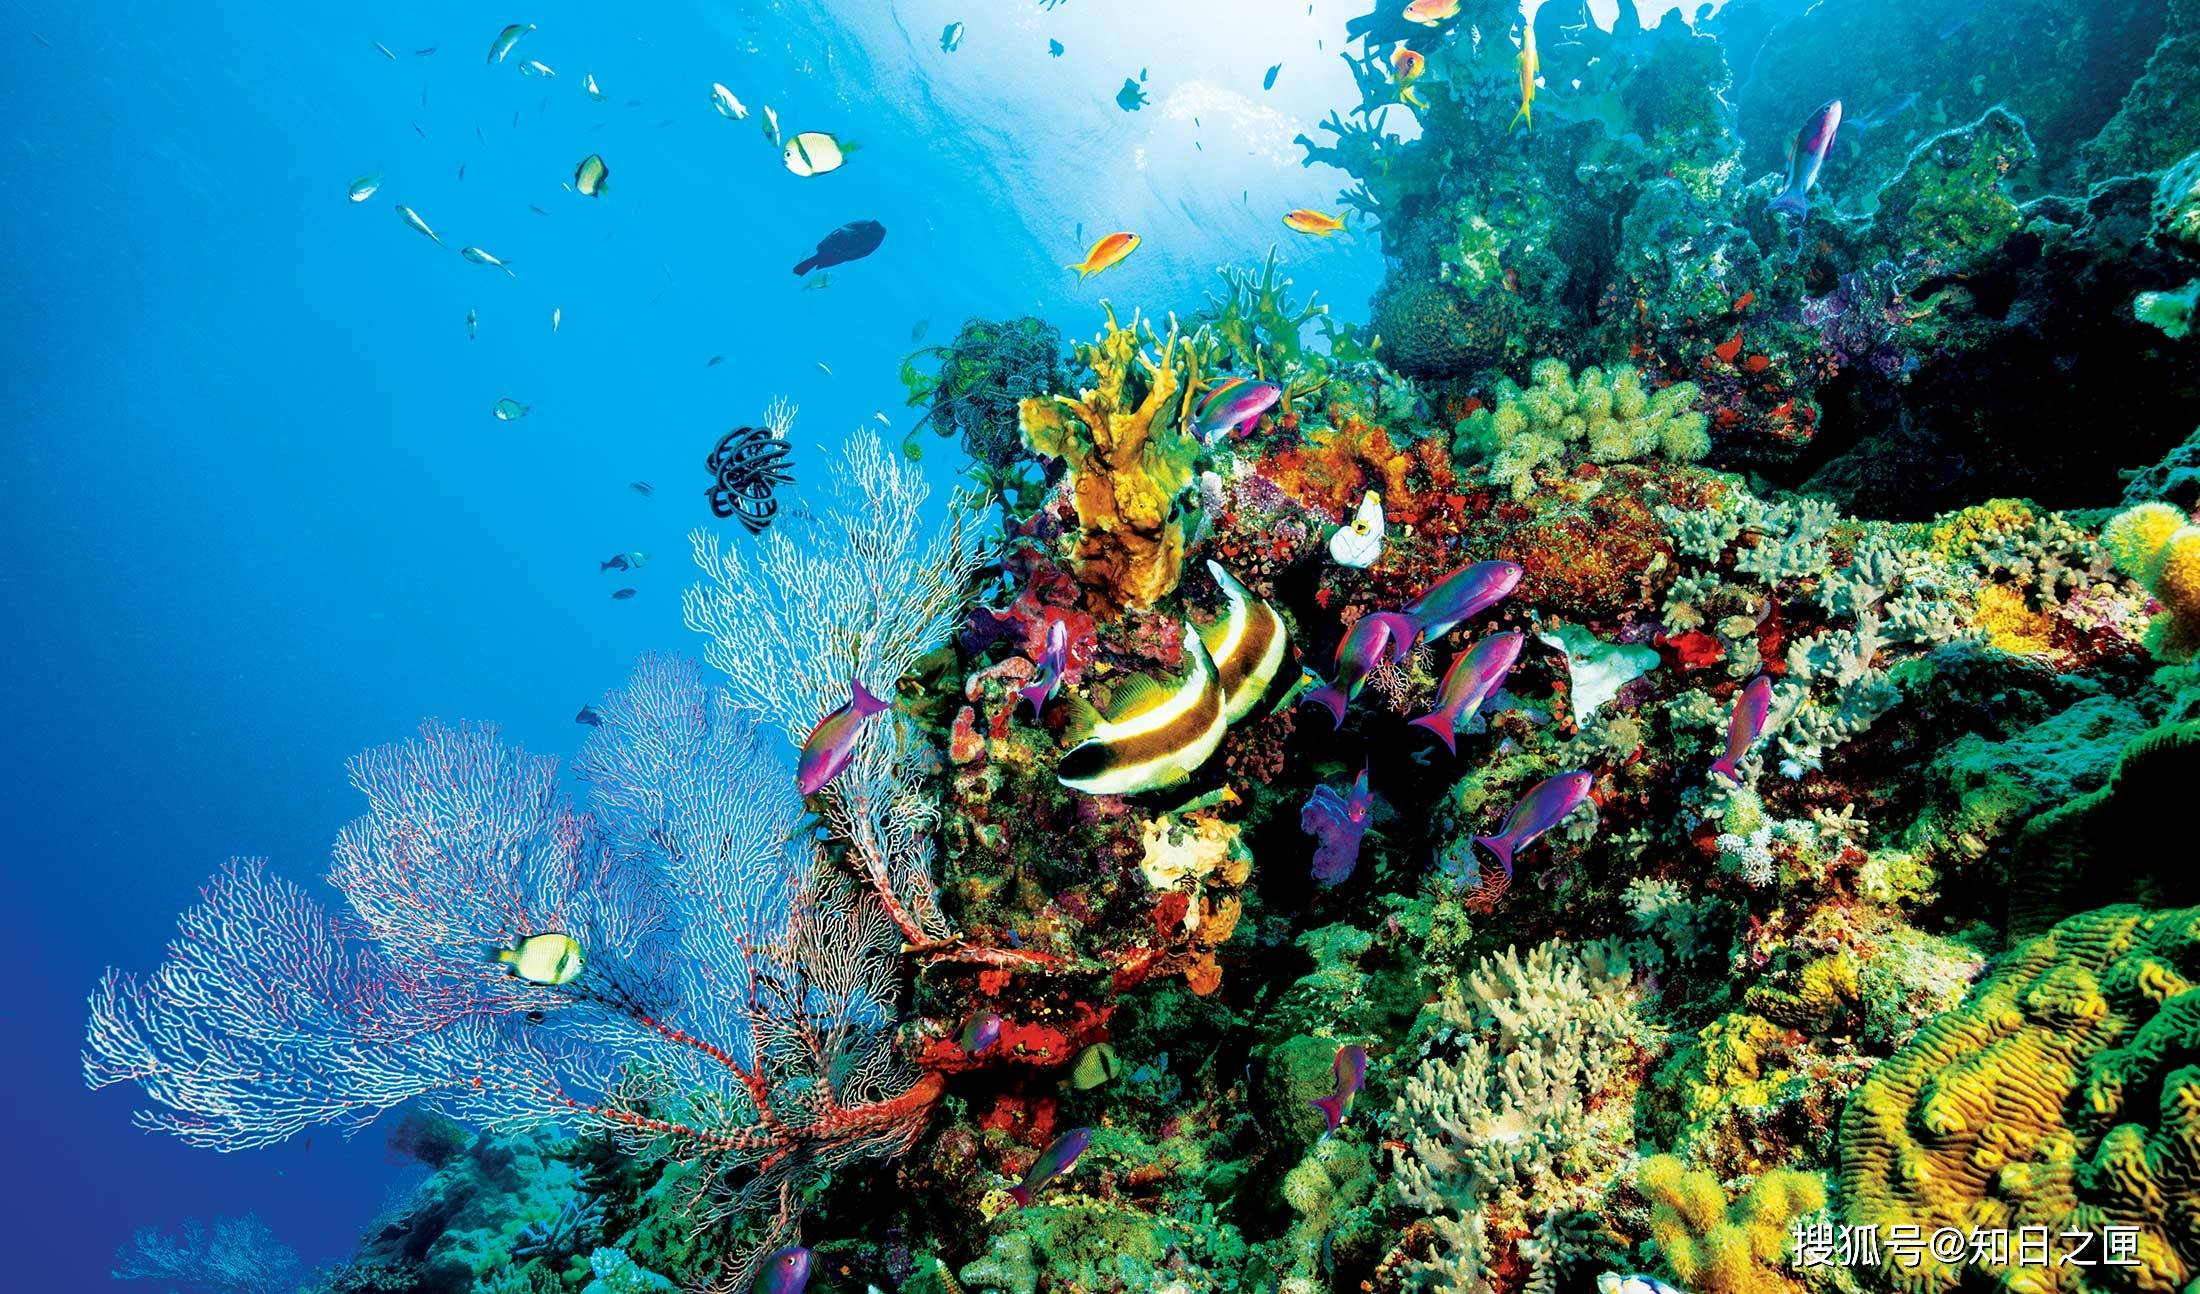 拥有全世界最古老的雨林和最大的珊瑚礁!令人难忘的纯净自然!